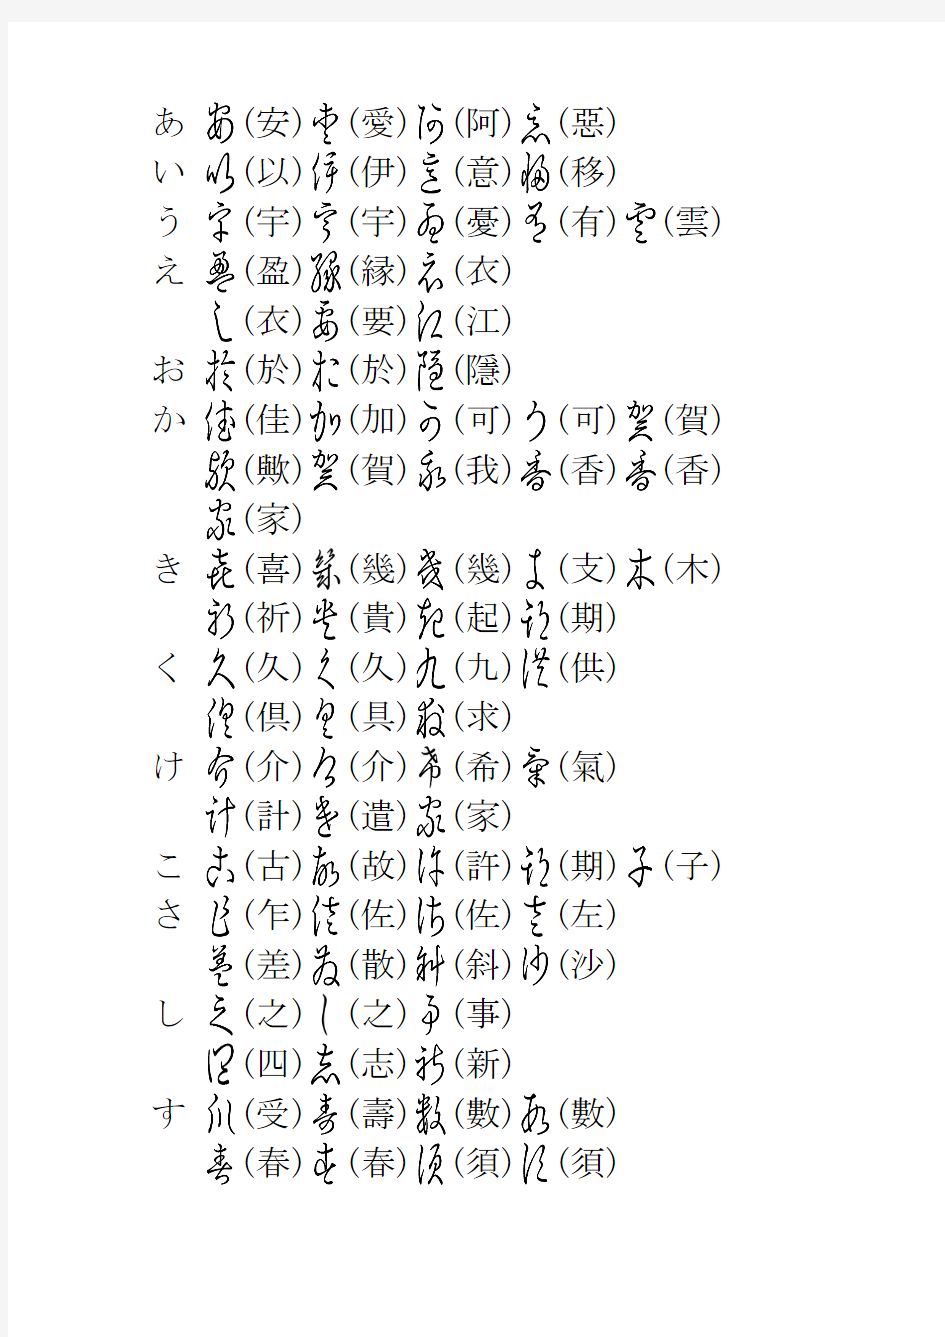 变体假名及其汉字原形 变体假名及其汉字原形 変体仮名及其汉字原形(PDF版)